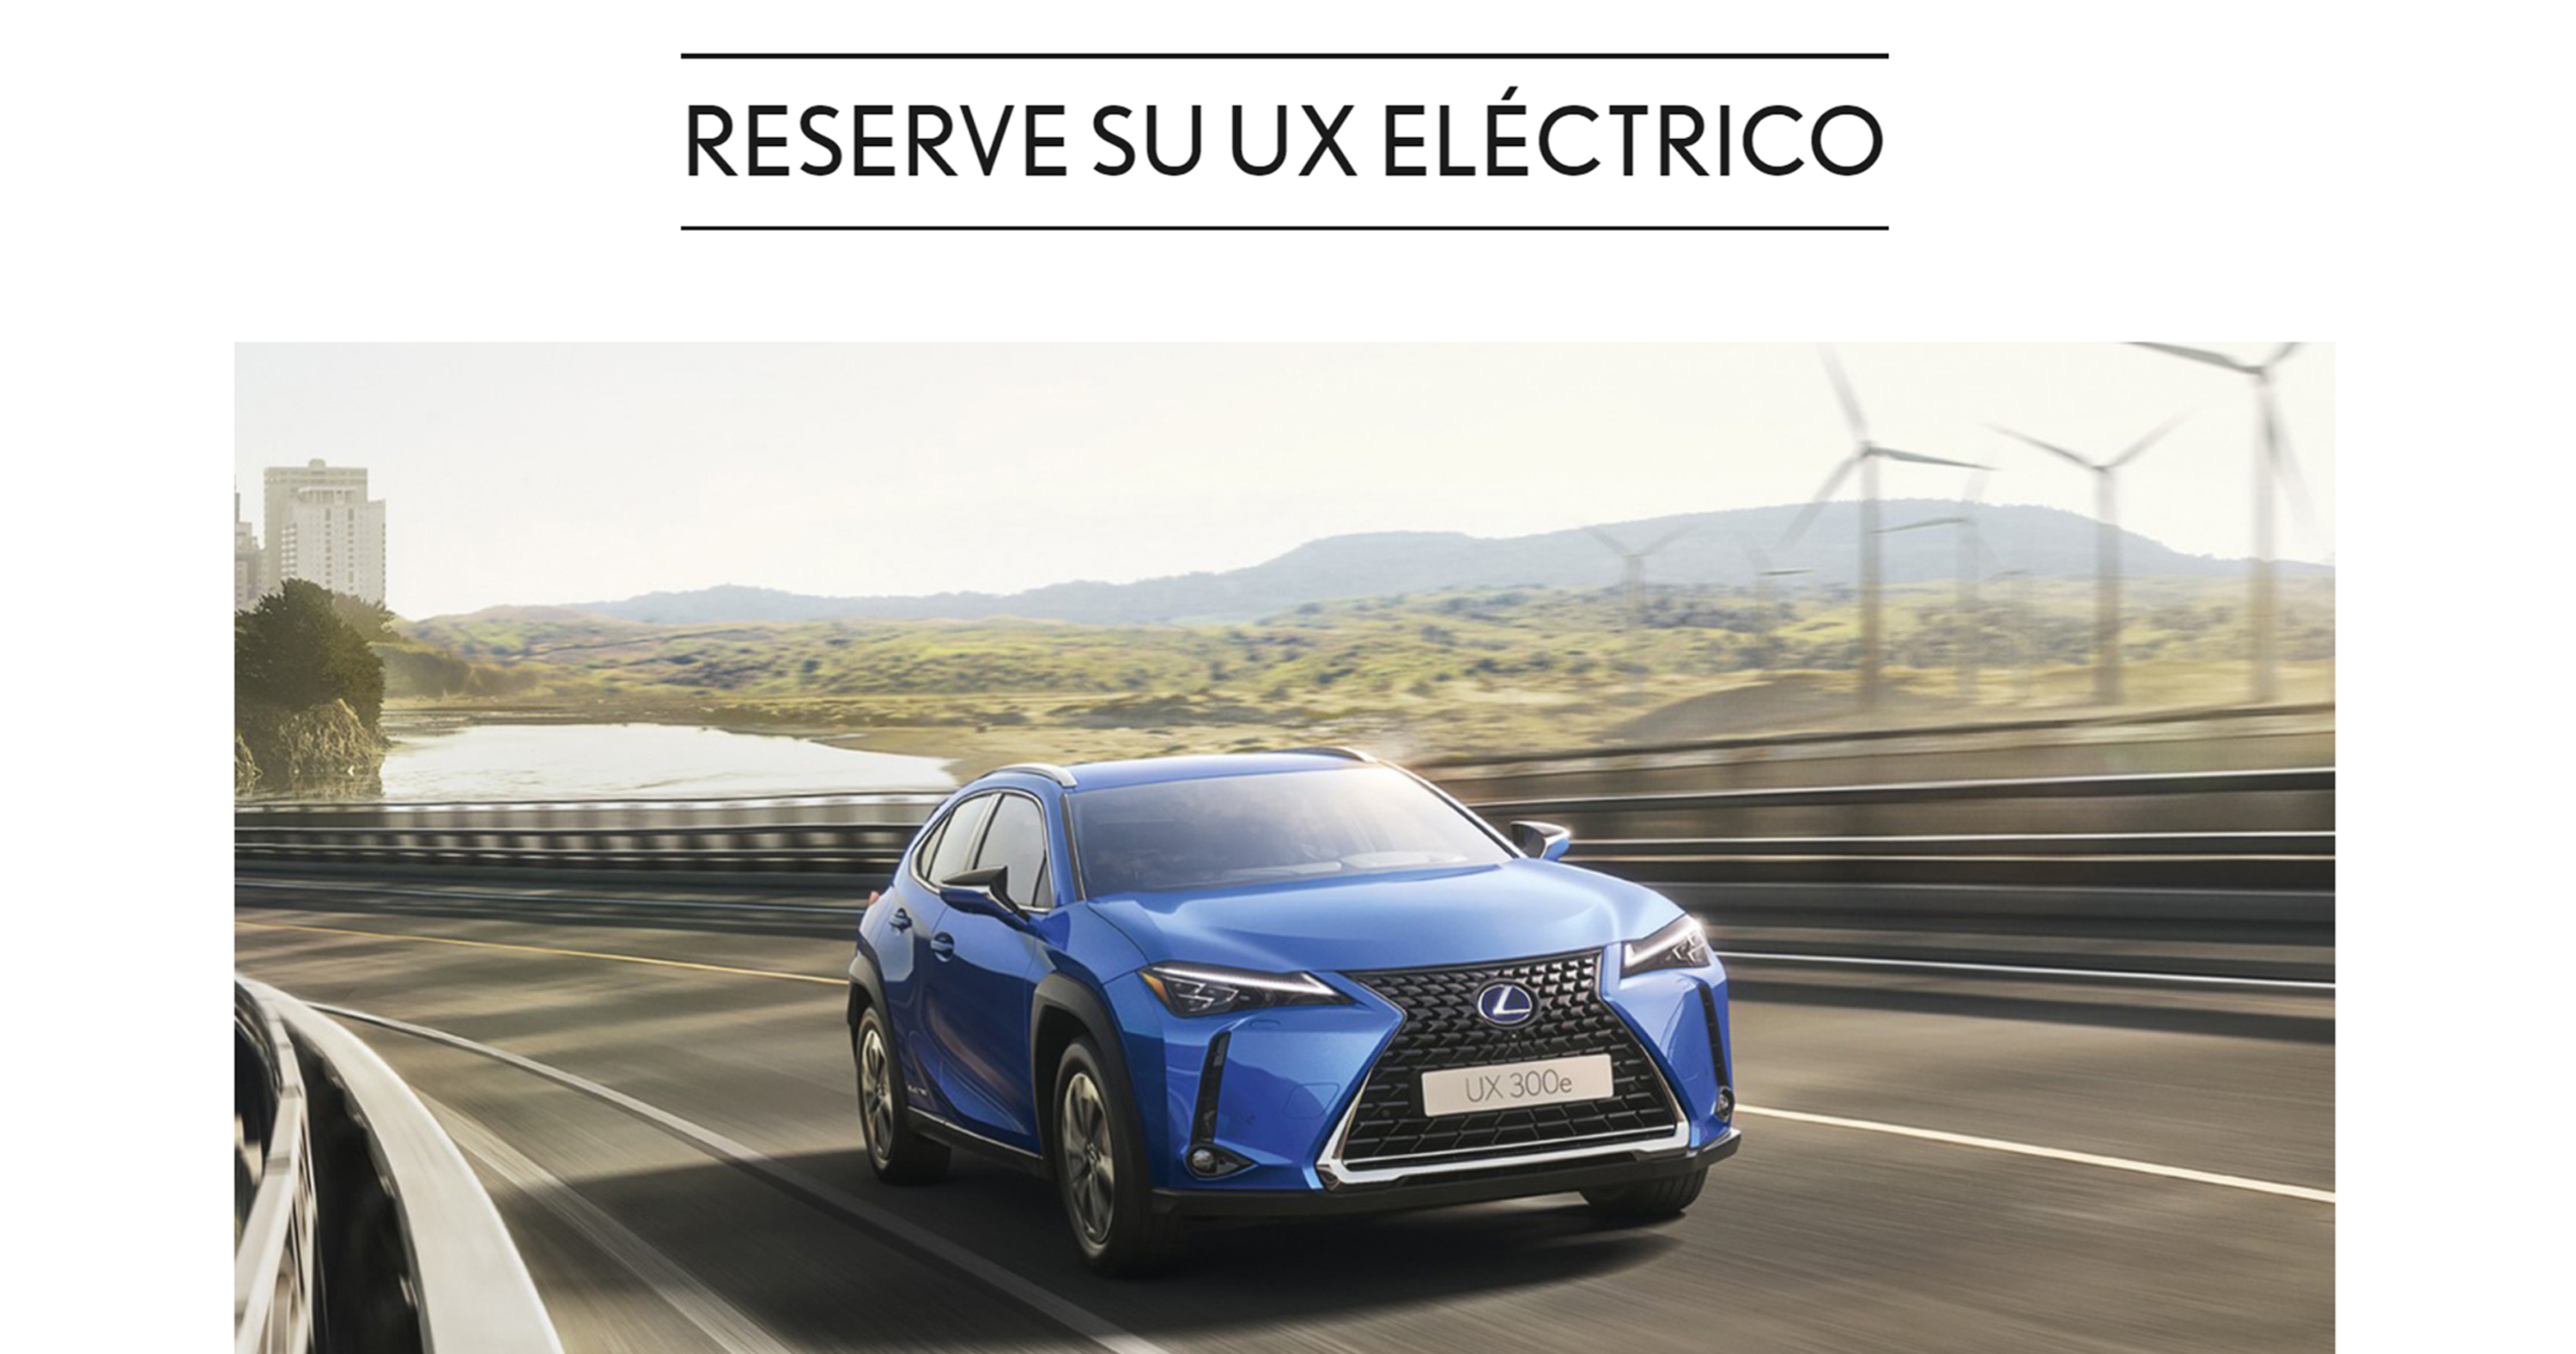 Galería: Lexus habilita un canal online para la reserva del nuevo UX 300e eléctrico